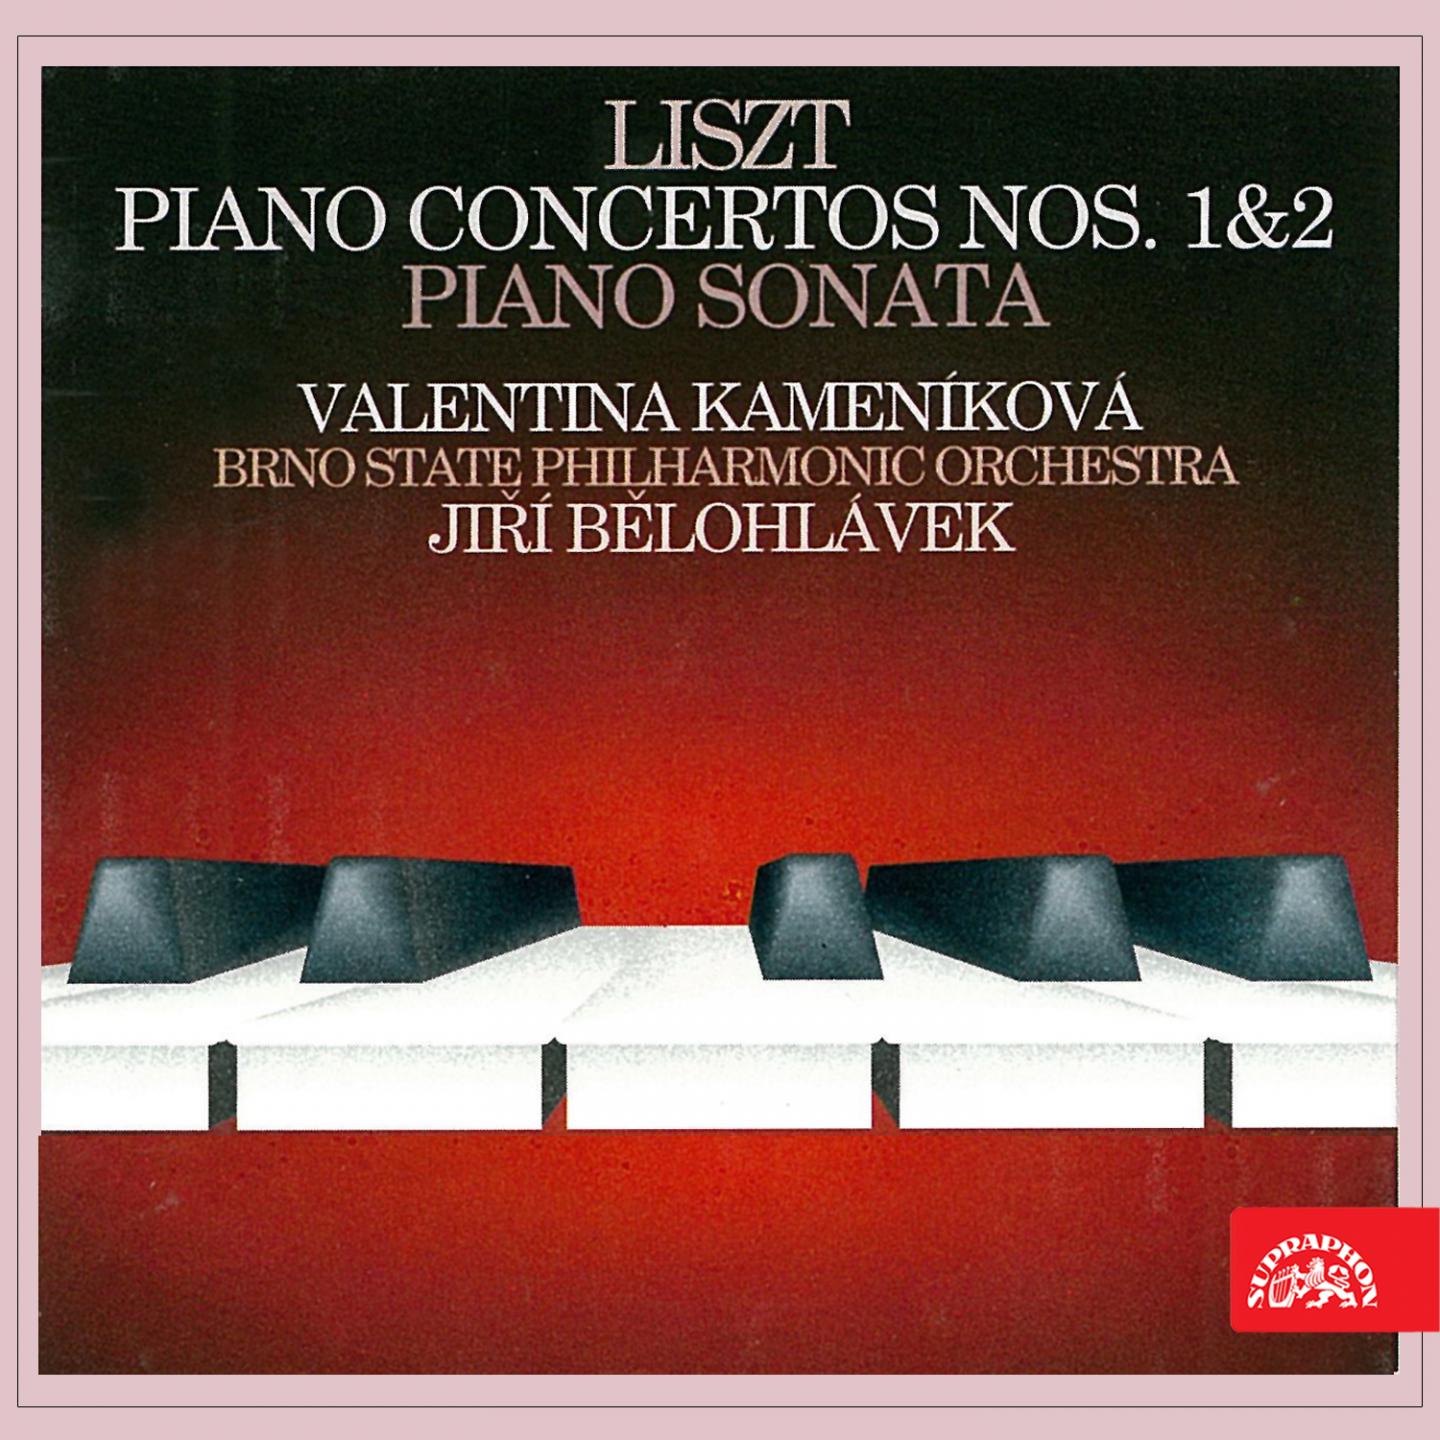 Piano Concerto No. 1 in E-Flat Major, S. 124: III. Allegretto vivace